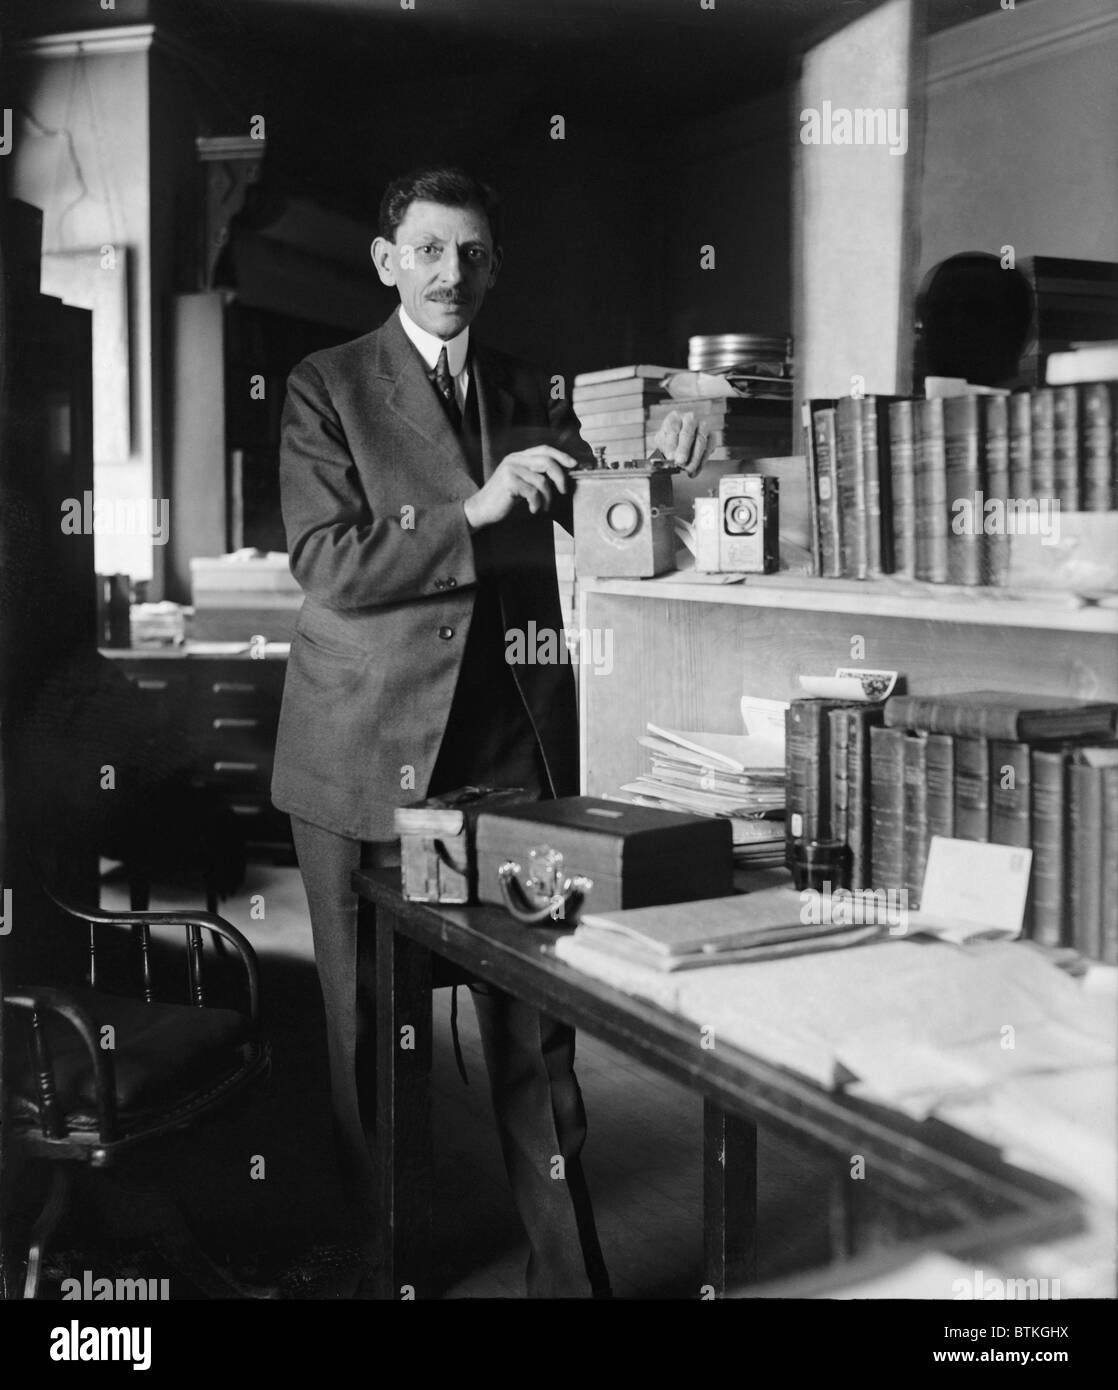 Paul Bartsch (1871 – 1960), amerikanischer Wissenschaftler mit der Smithsonian Institution initiiert Vogel Streifenbildung Vogelzug zu studieren. 1926-Porträt. Stockfoto